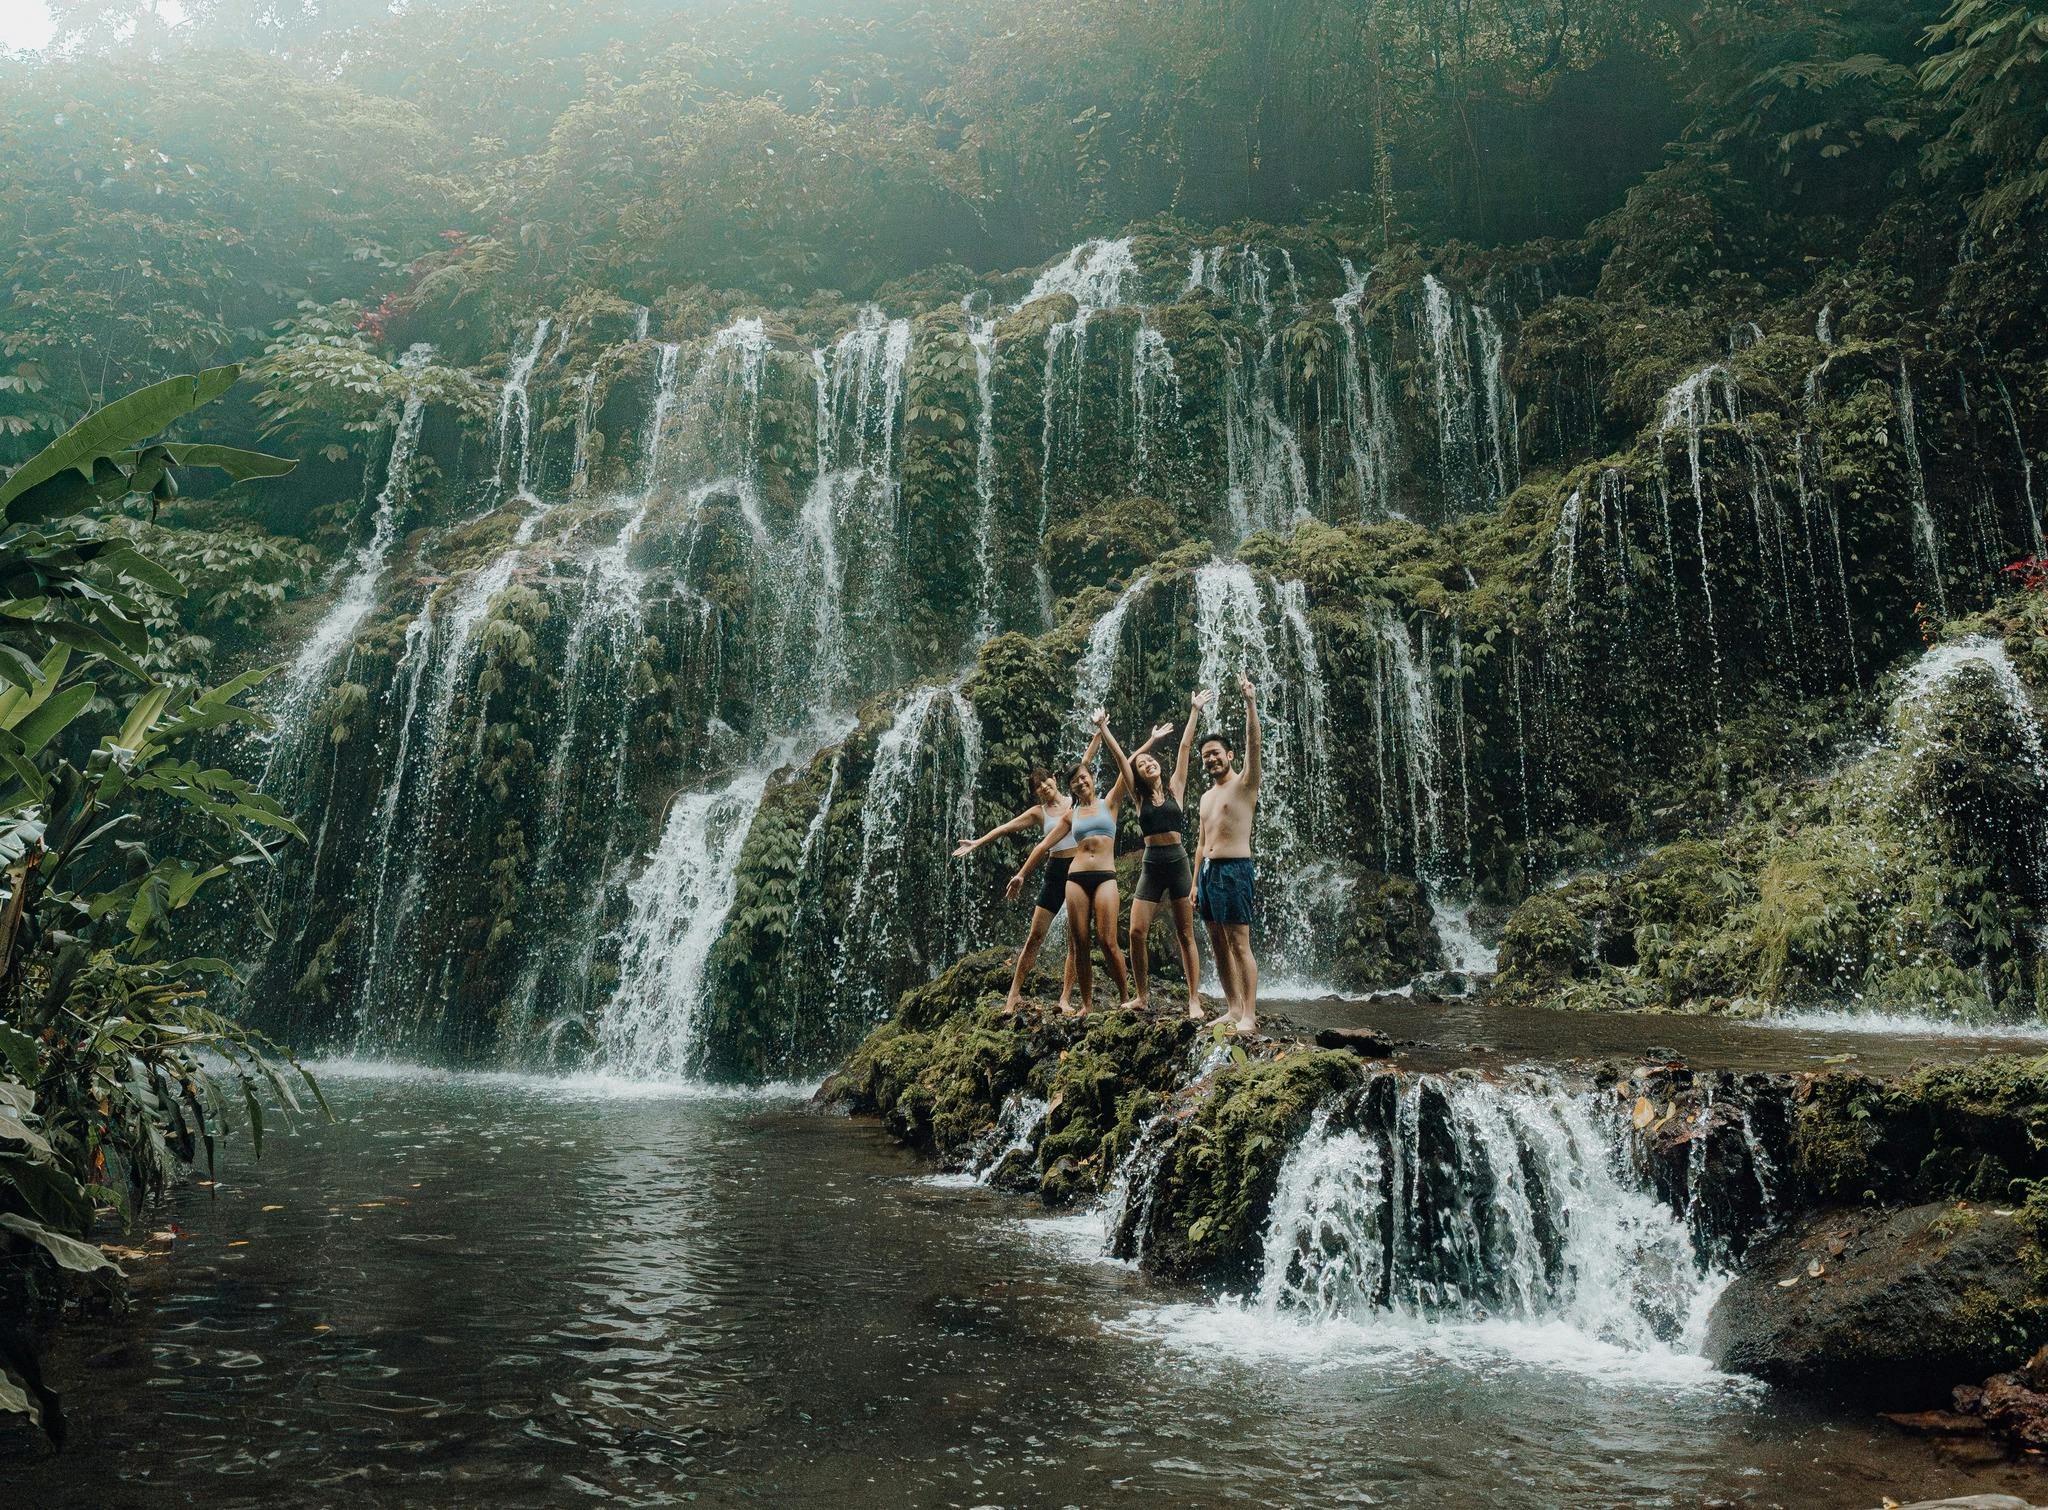 Bali - Ancient Jungles and Waterfalls